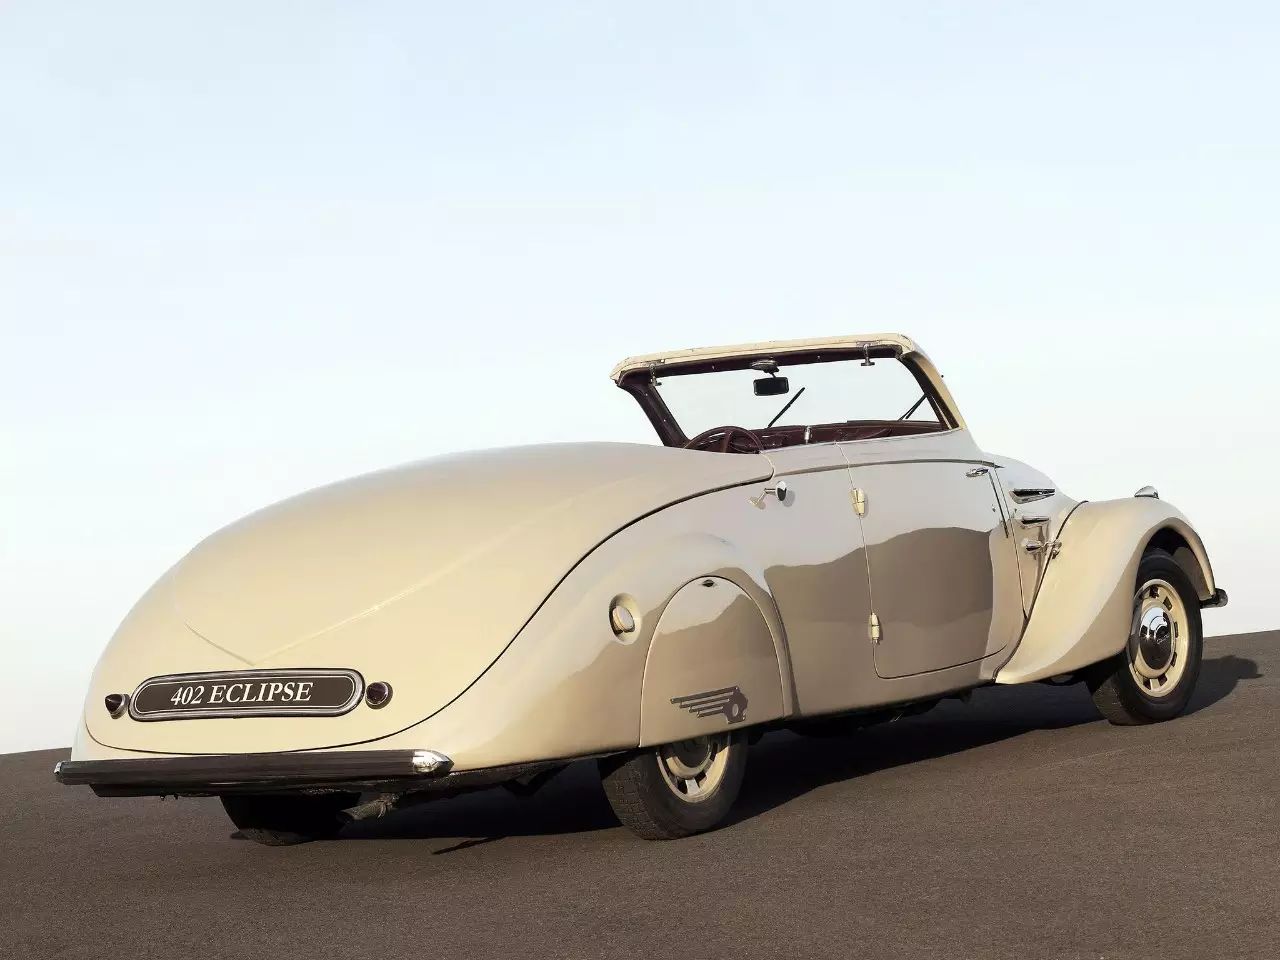 被誉为二战前最美量产车的标致402 eclipse 敞篷状态